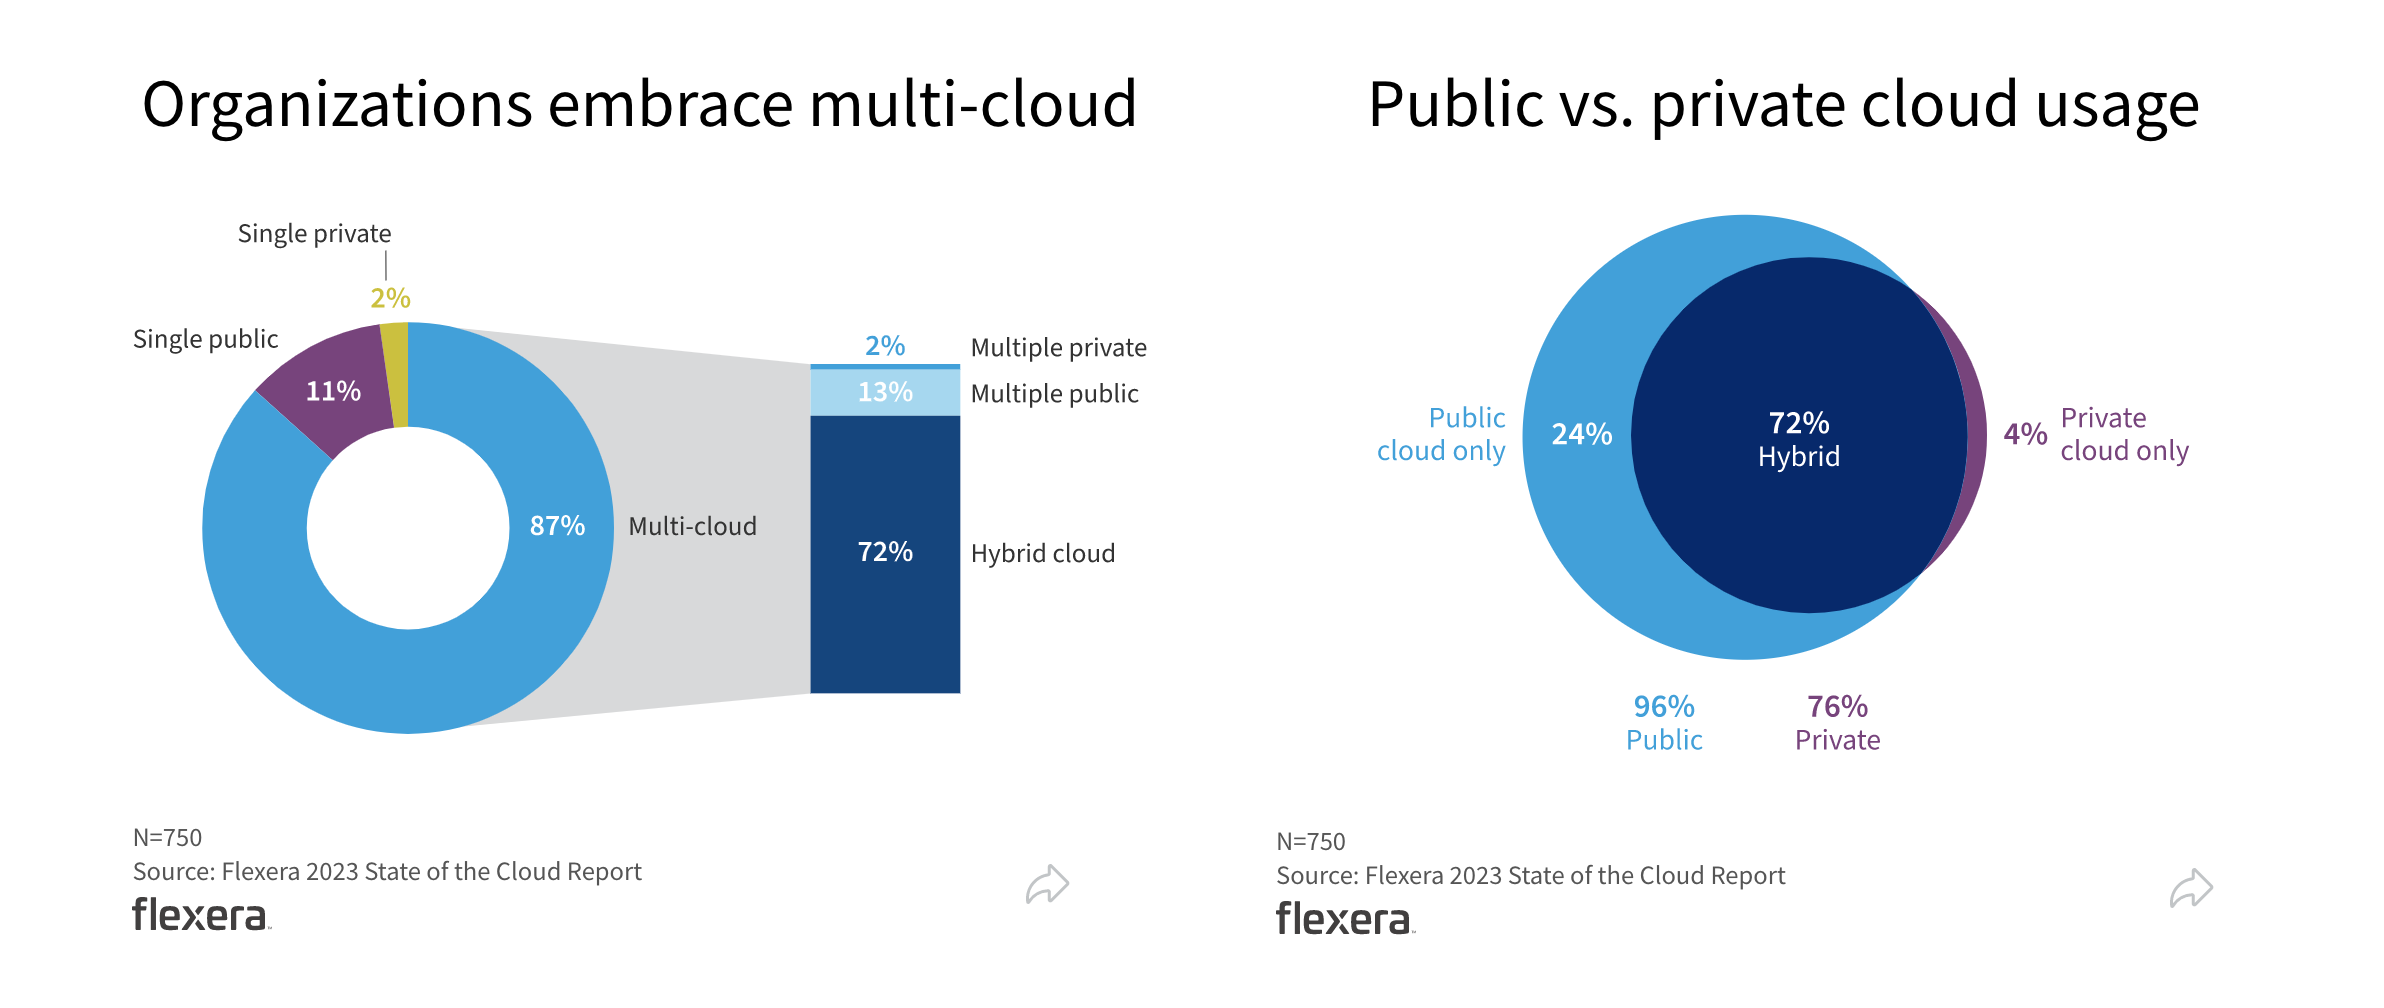 72% of all enterprises use a hybrid cloud model